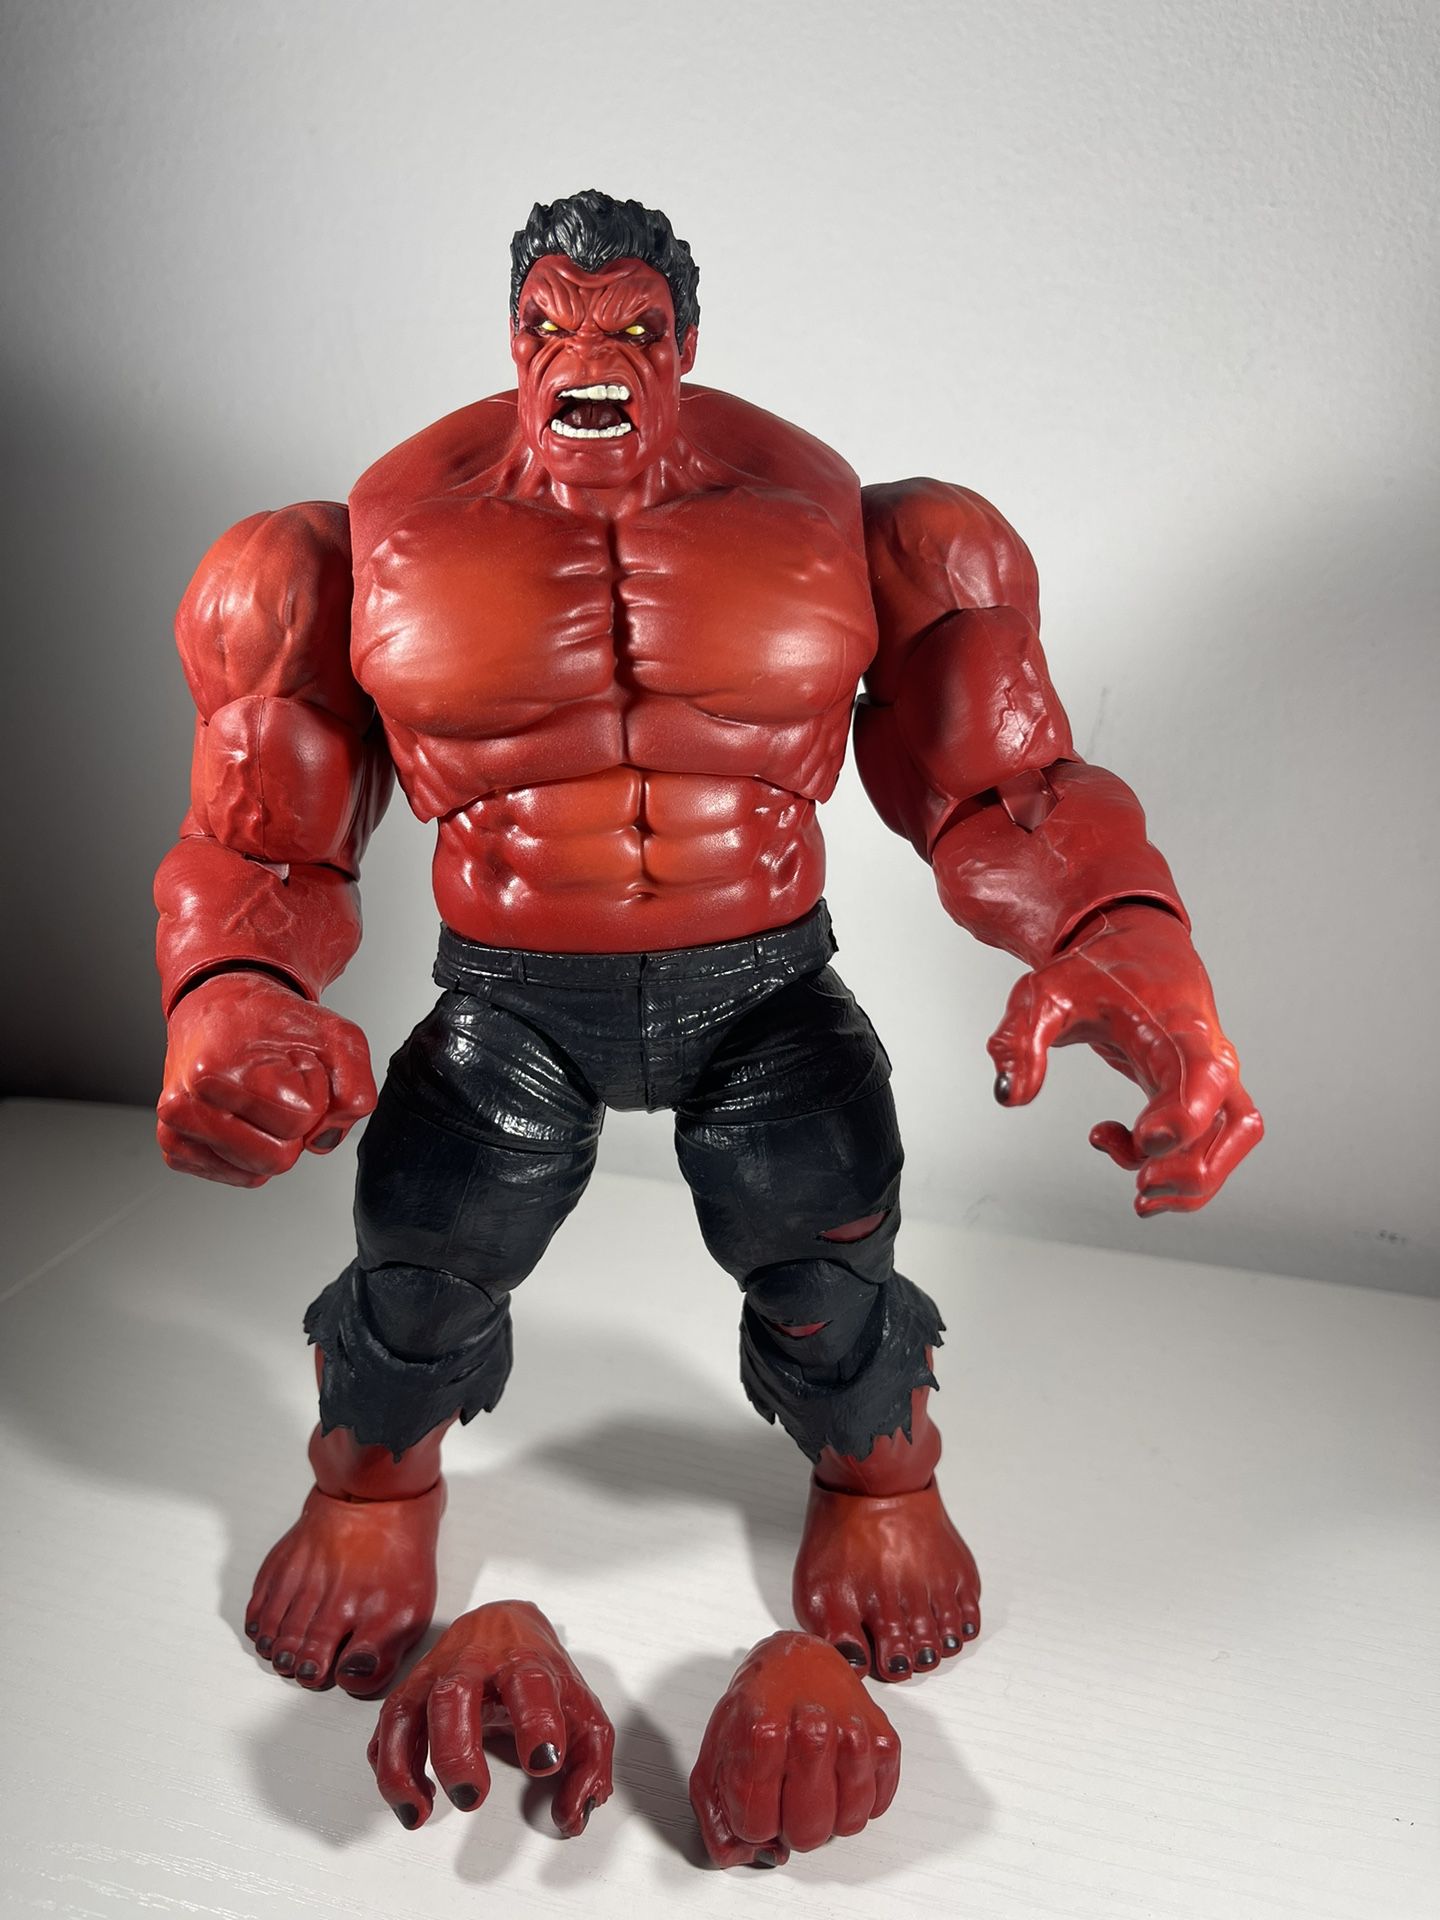 Marvel Legends Red Hulk